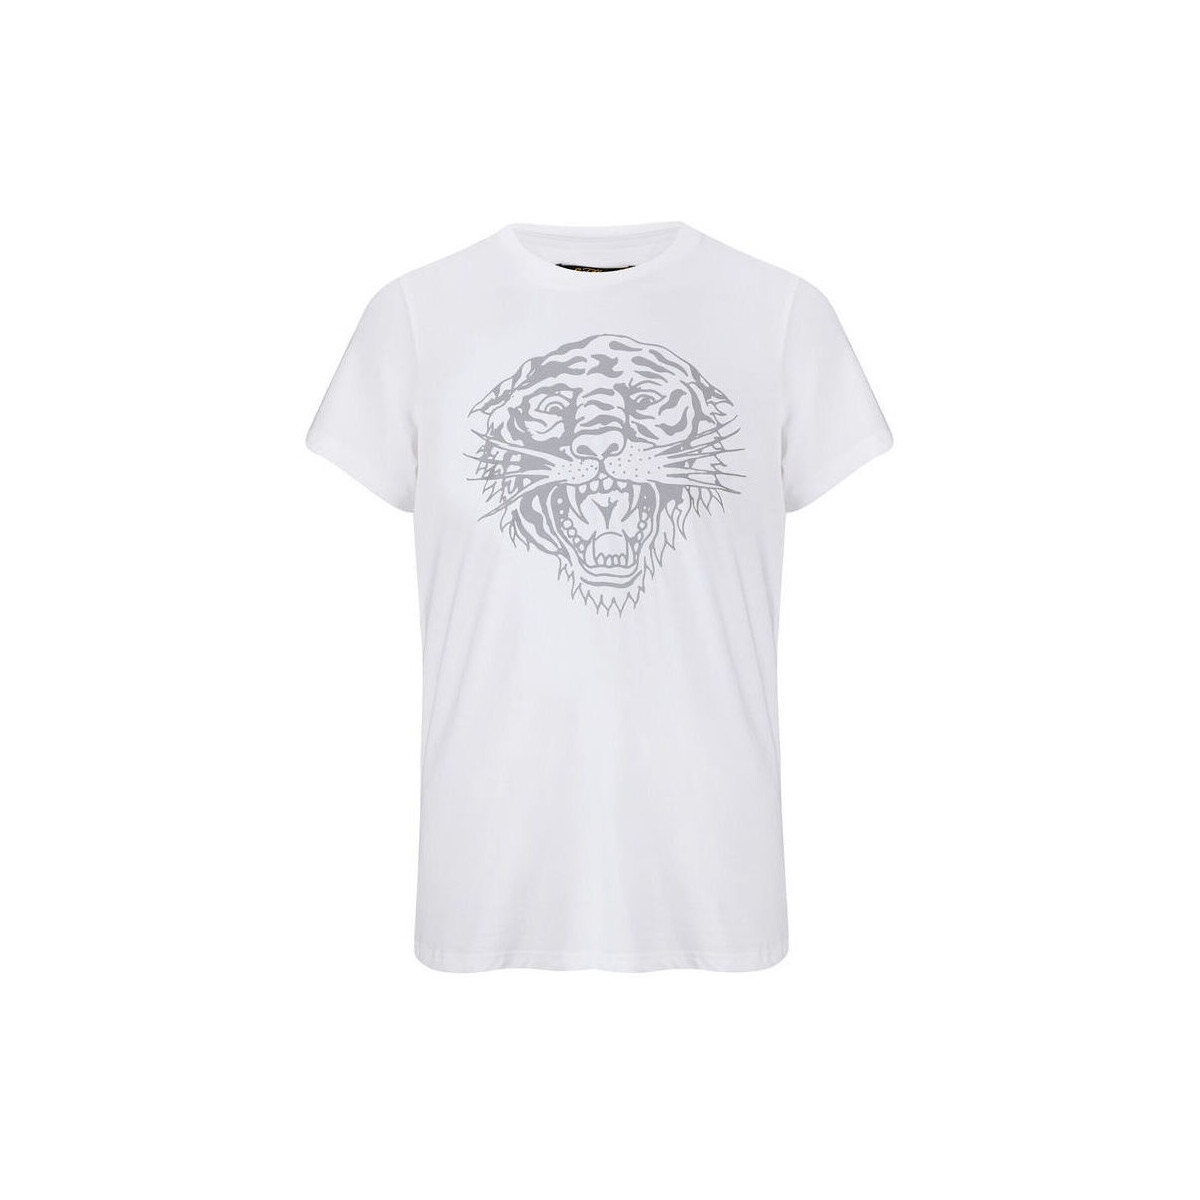 Textil Muži Trička s krátkým rukávem Ed Hardy Tiger-glow t-shirt white Bílá